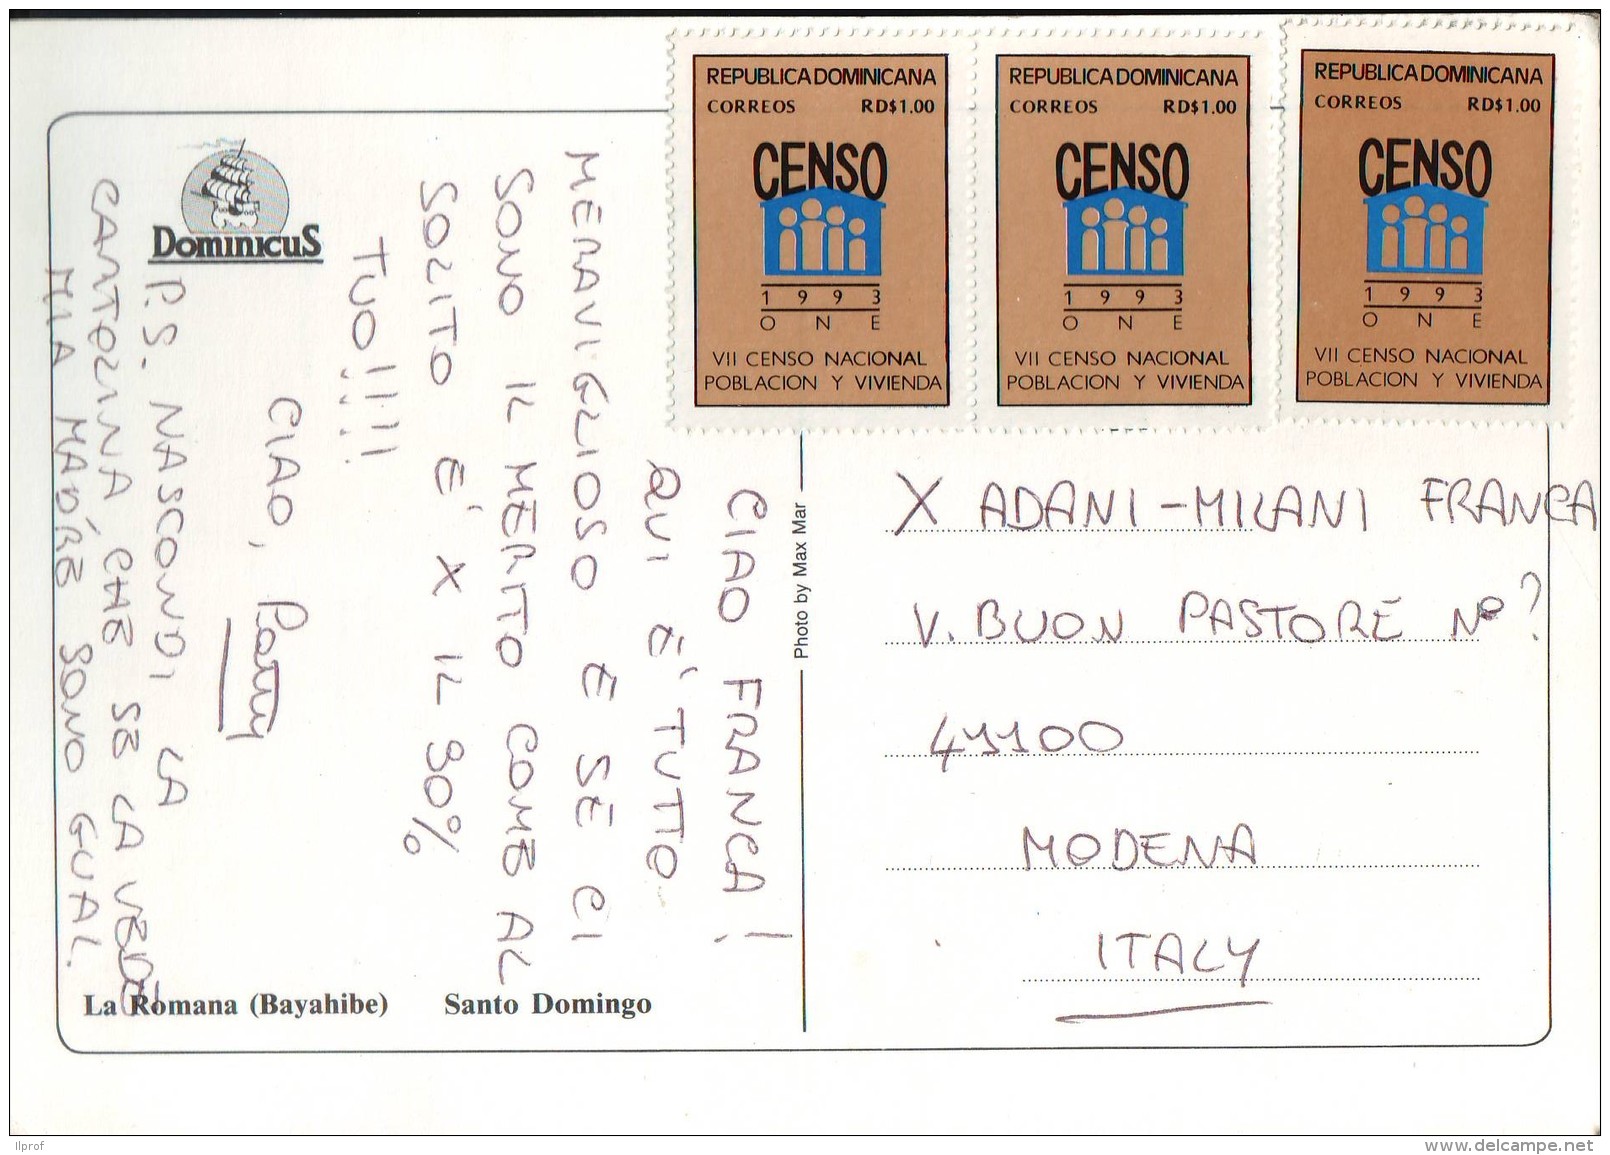 VII Censo National 1993, 3 Francobolli Val 1,00 Rep. Dominicana Su Cartolina - Repubblica Domenicana